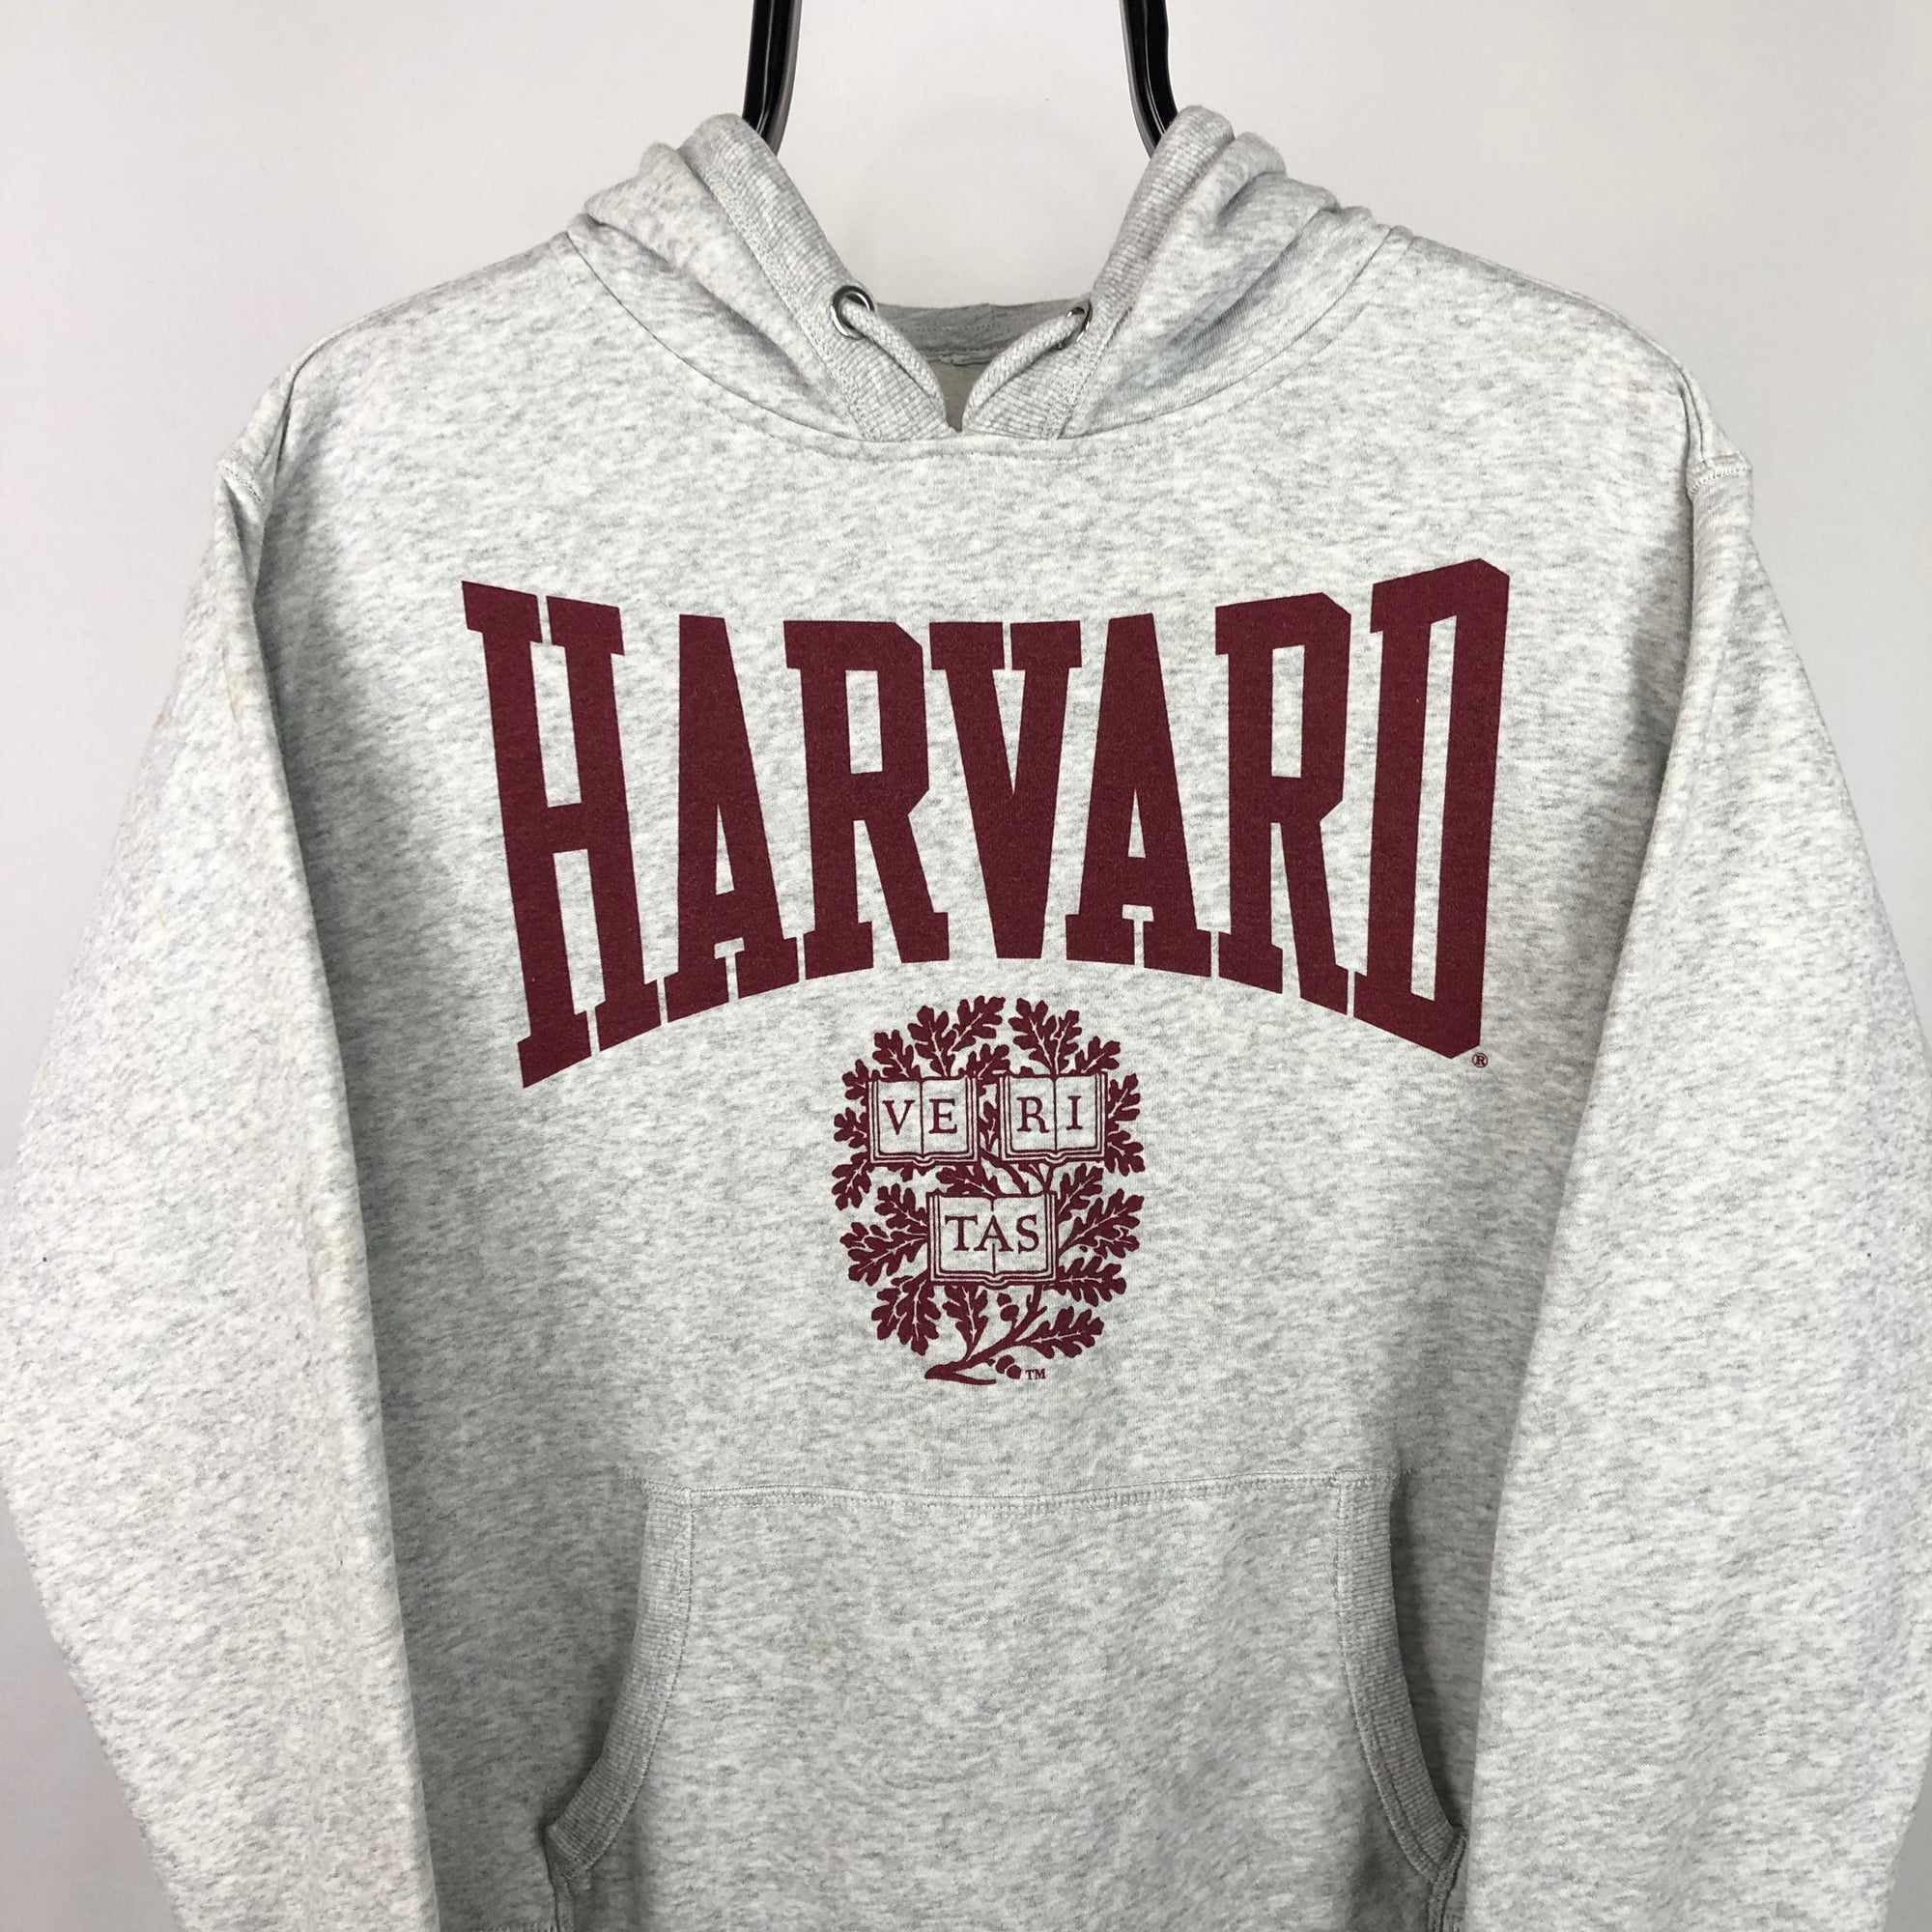 Vintage Harvard University Hoodie in Grey/Maroon - Men's Small/Women's Medium